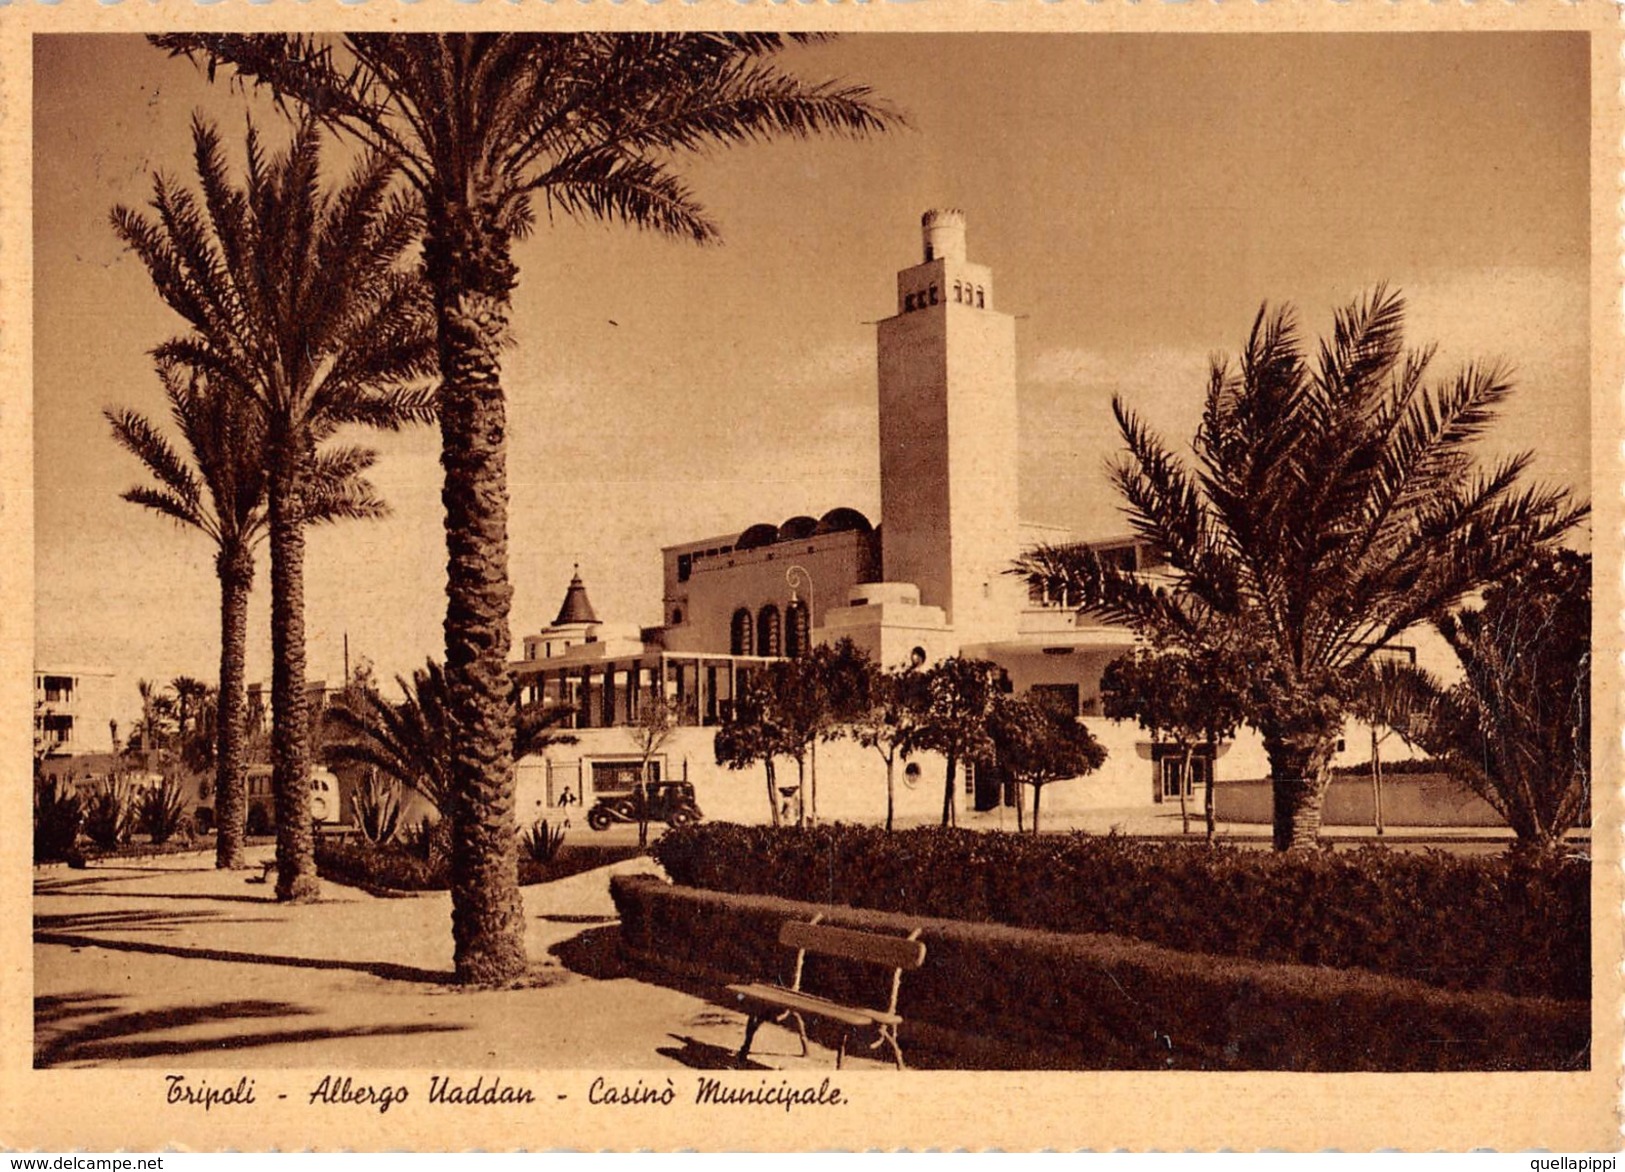 05273 "TRIPOLI - ALBERGO UADDAN - CASINO' MUNICIPALE" ANIMATA, AUTO '30,  FOTO 1937. CART  SPED 1979 - Libia